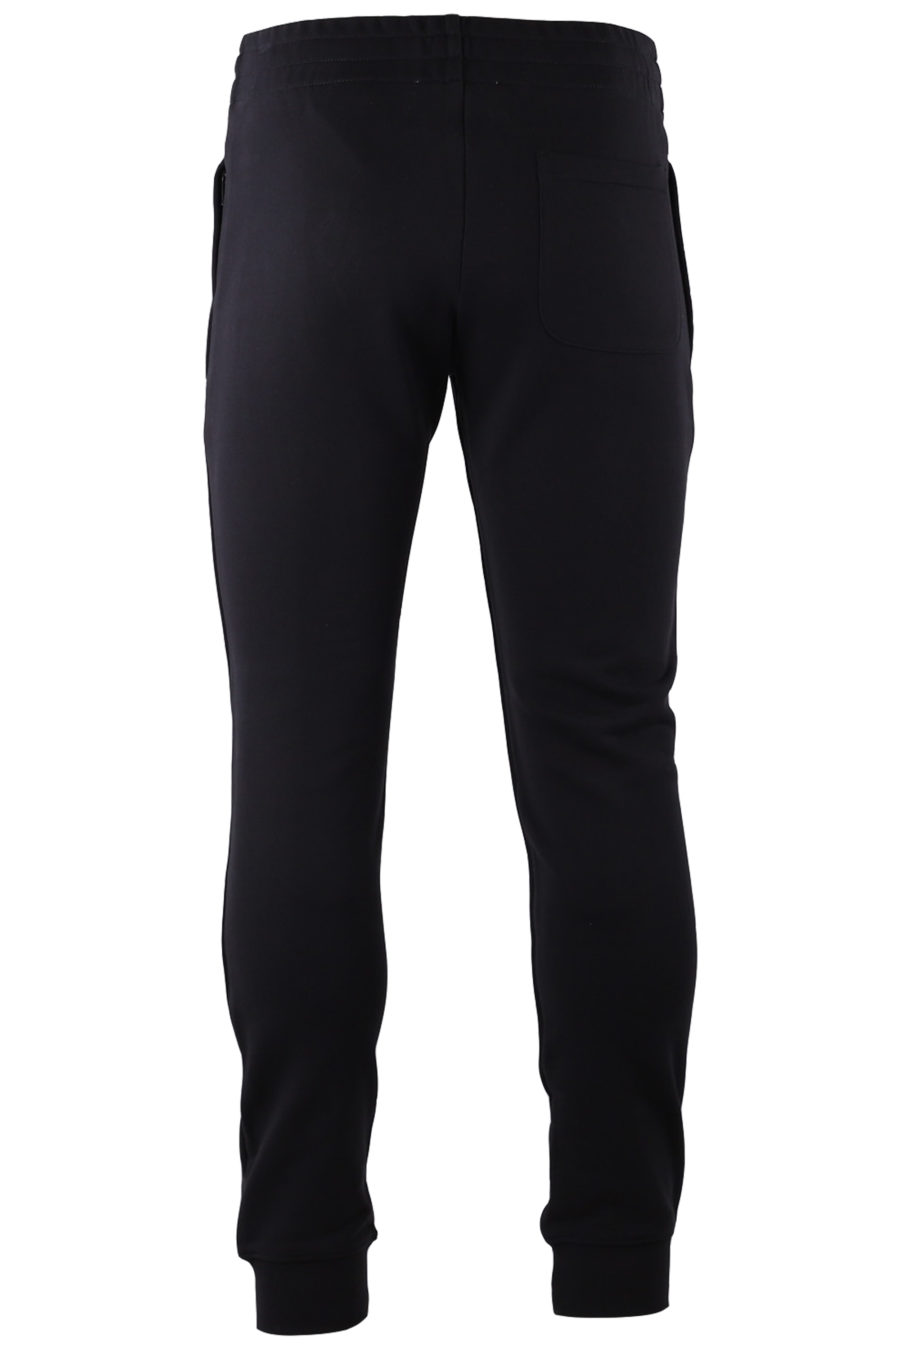 Pantalón de chándal negro con logo grande blanco - IMG 9196